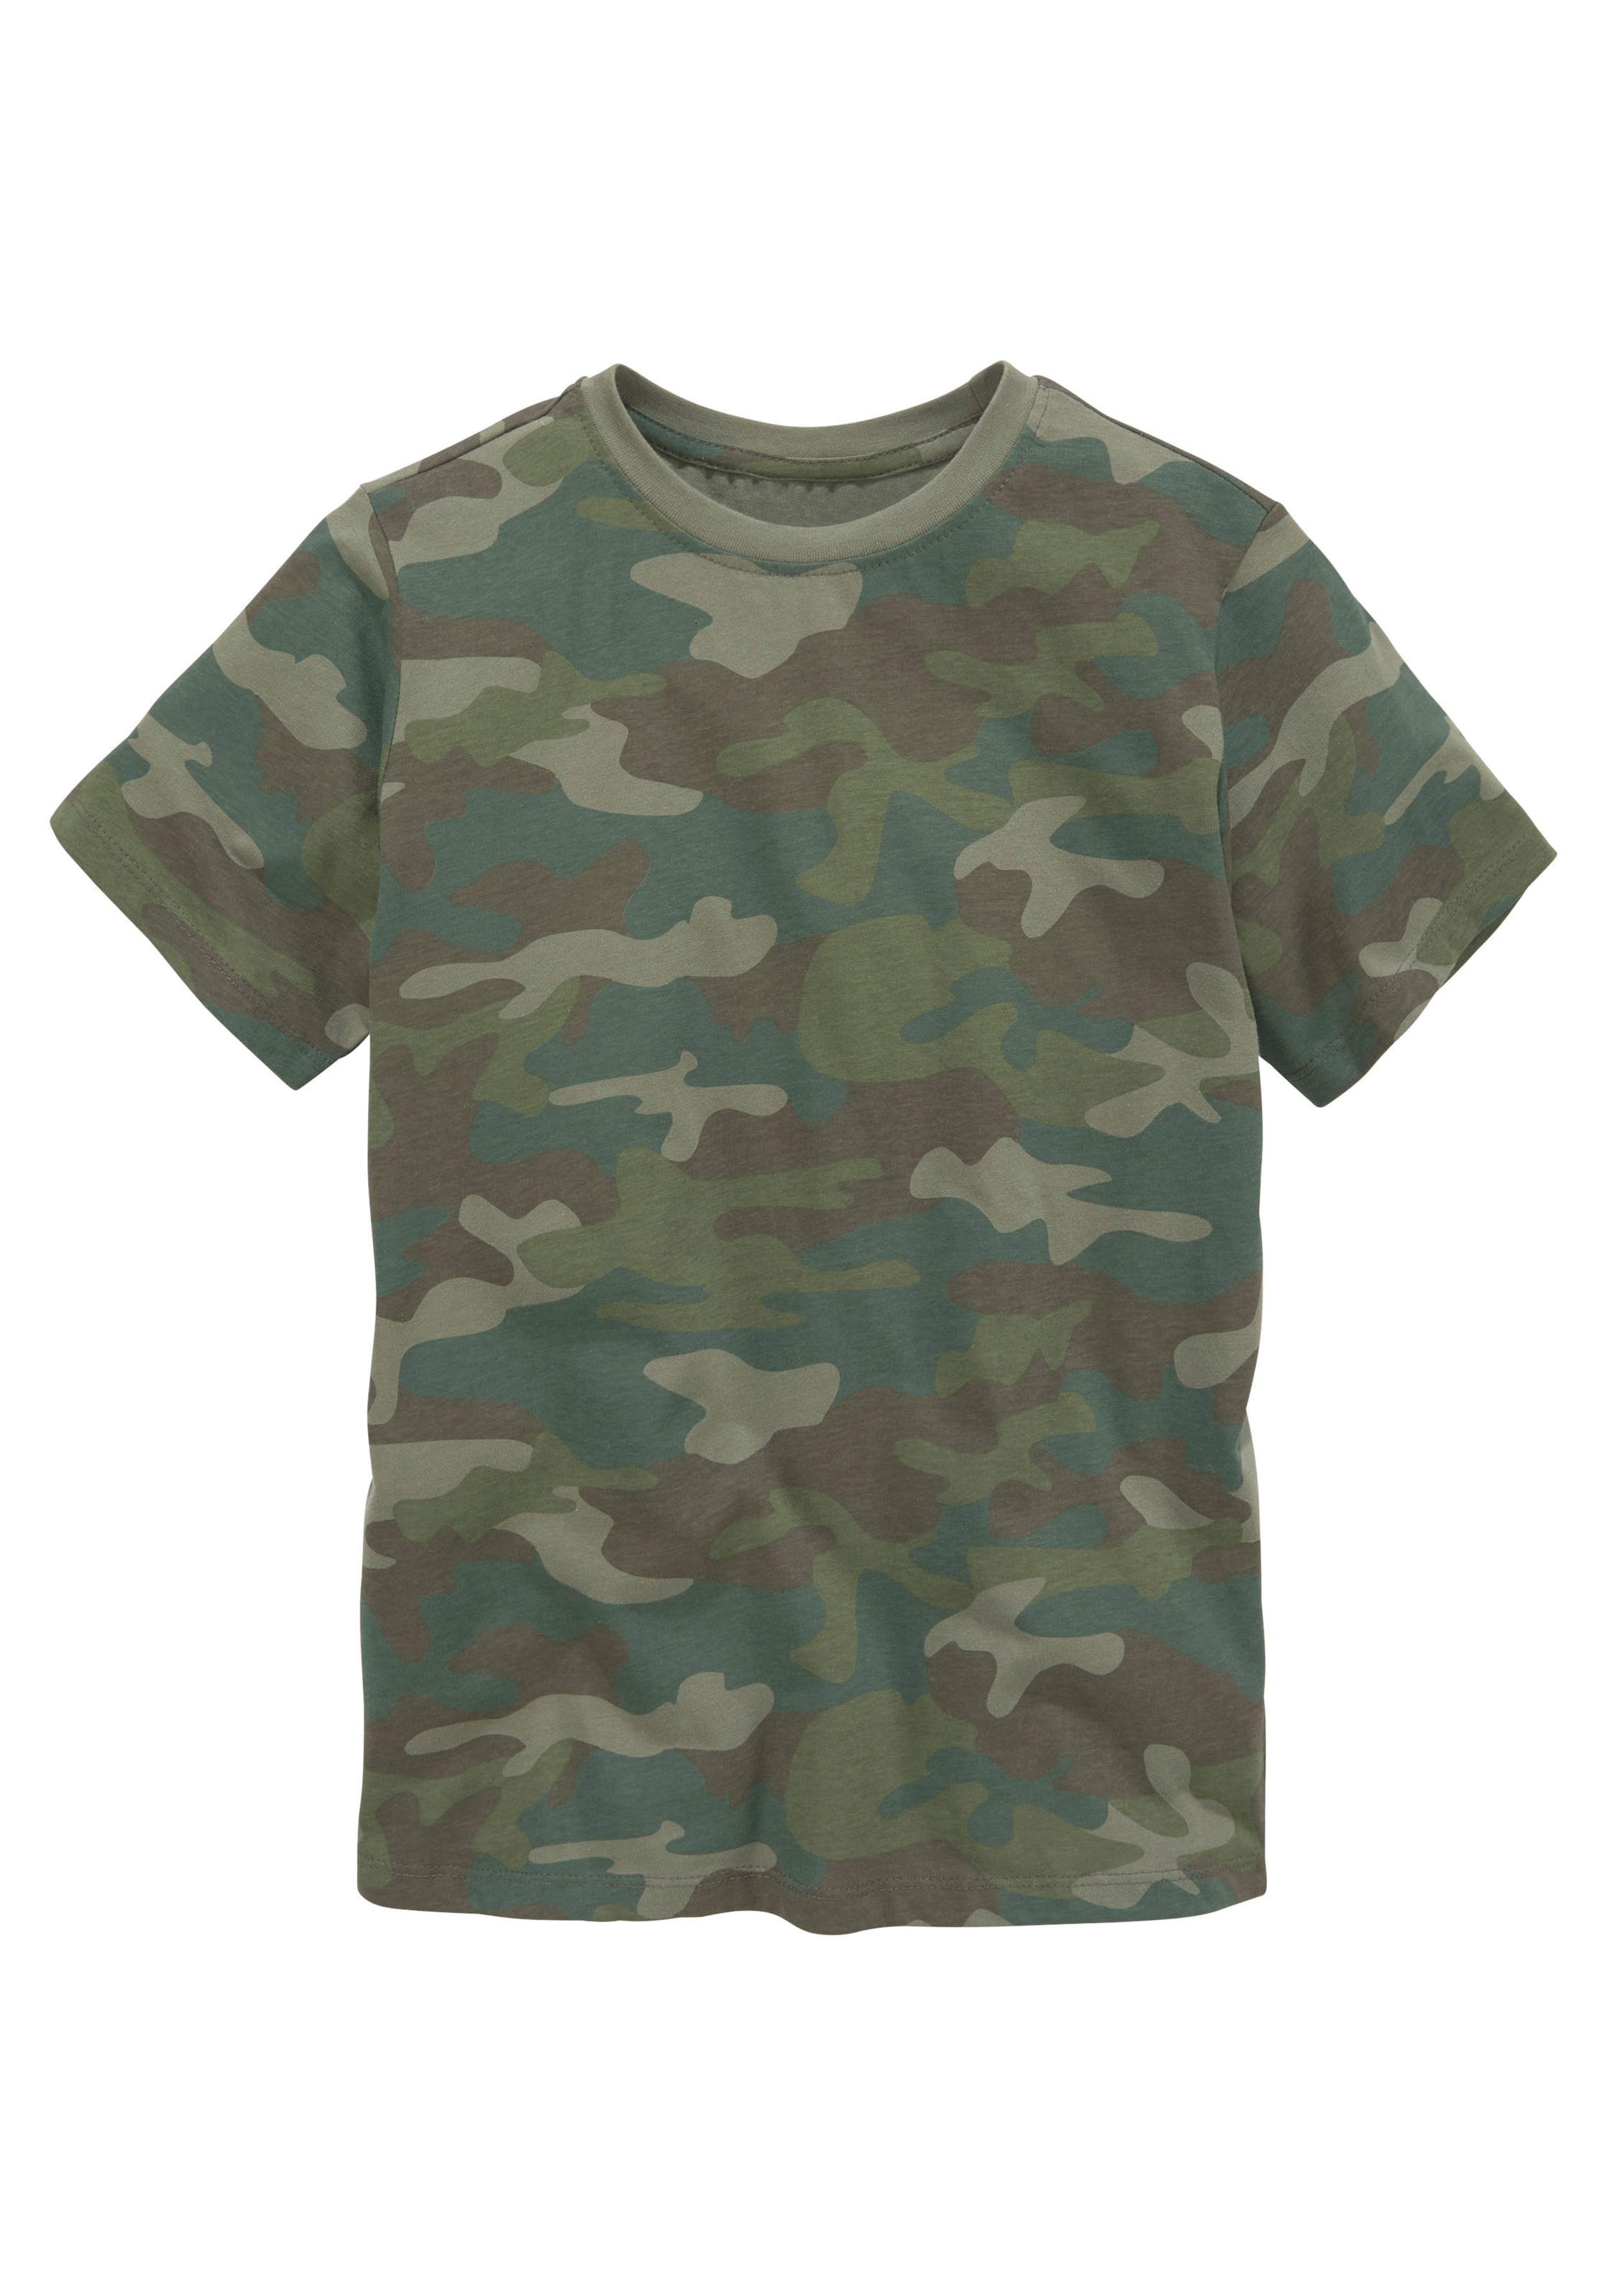 KIDSWORLD T-Shirt Tarnoptik« versandkostenfrei »in cooler auf